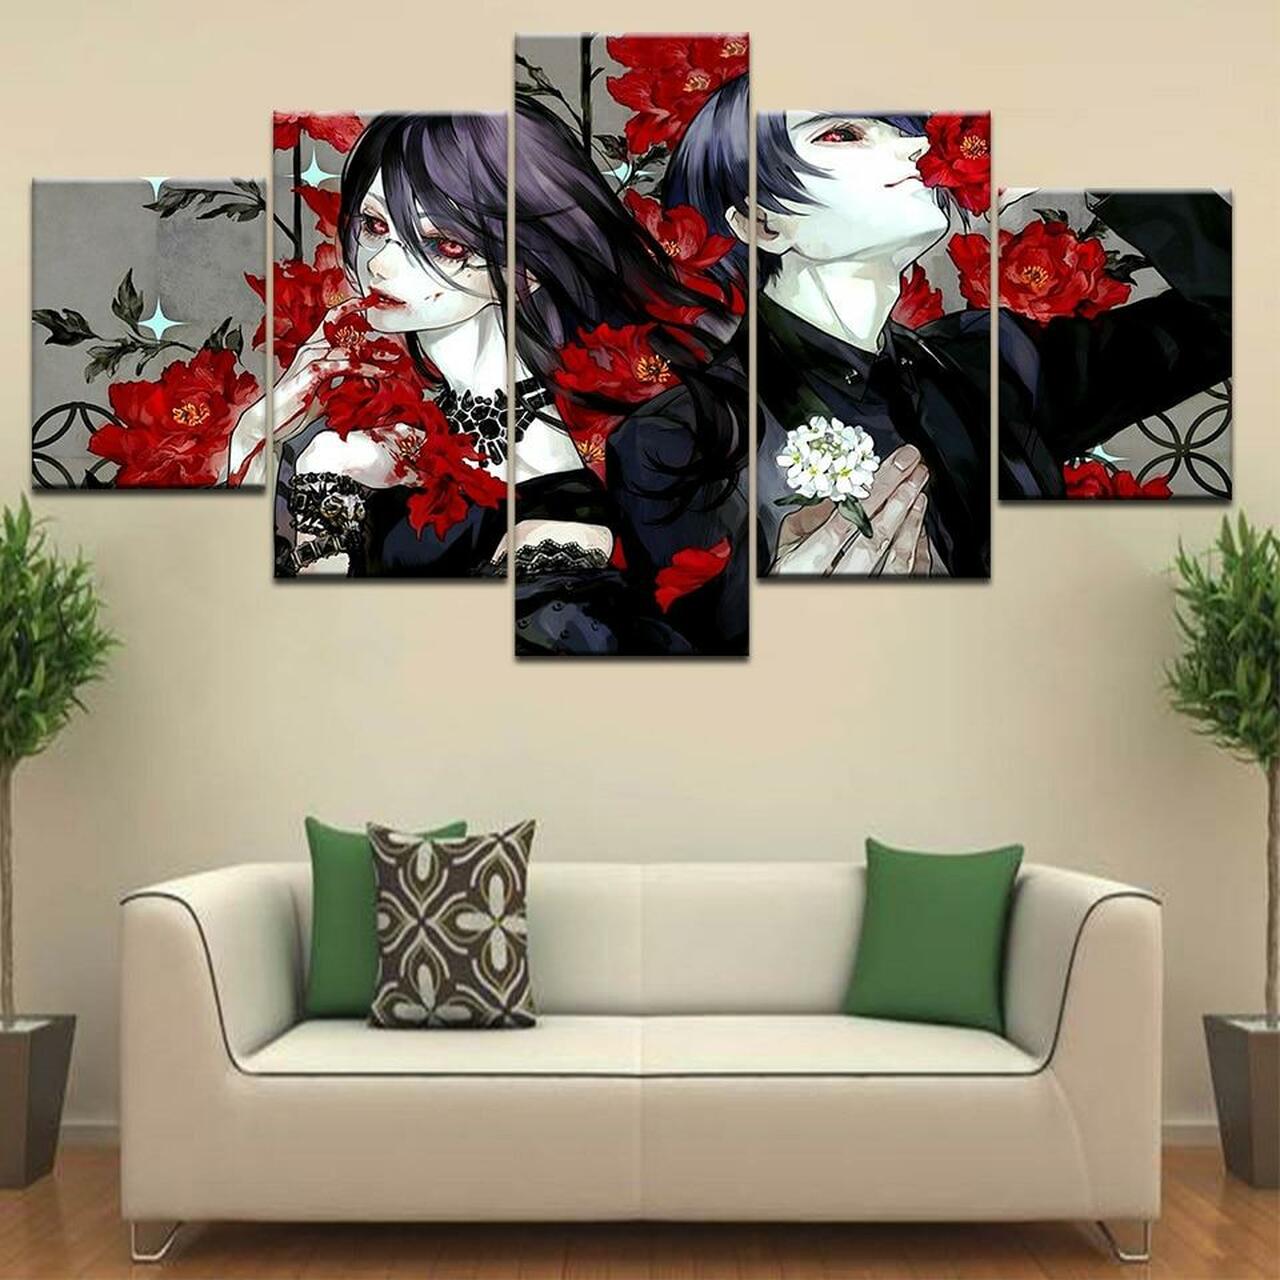 tokyo ghoul flowers 5 pices peinture sur toile impression sur toile toile art pour la dcoration intrieurebjpya